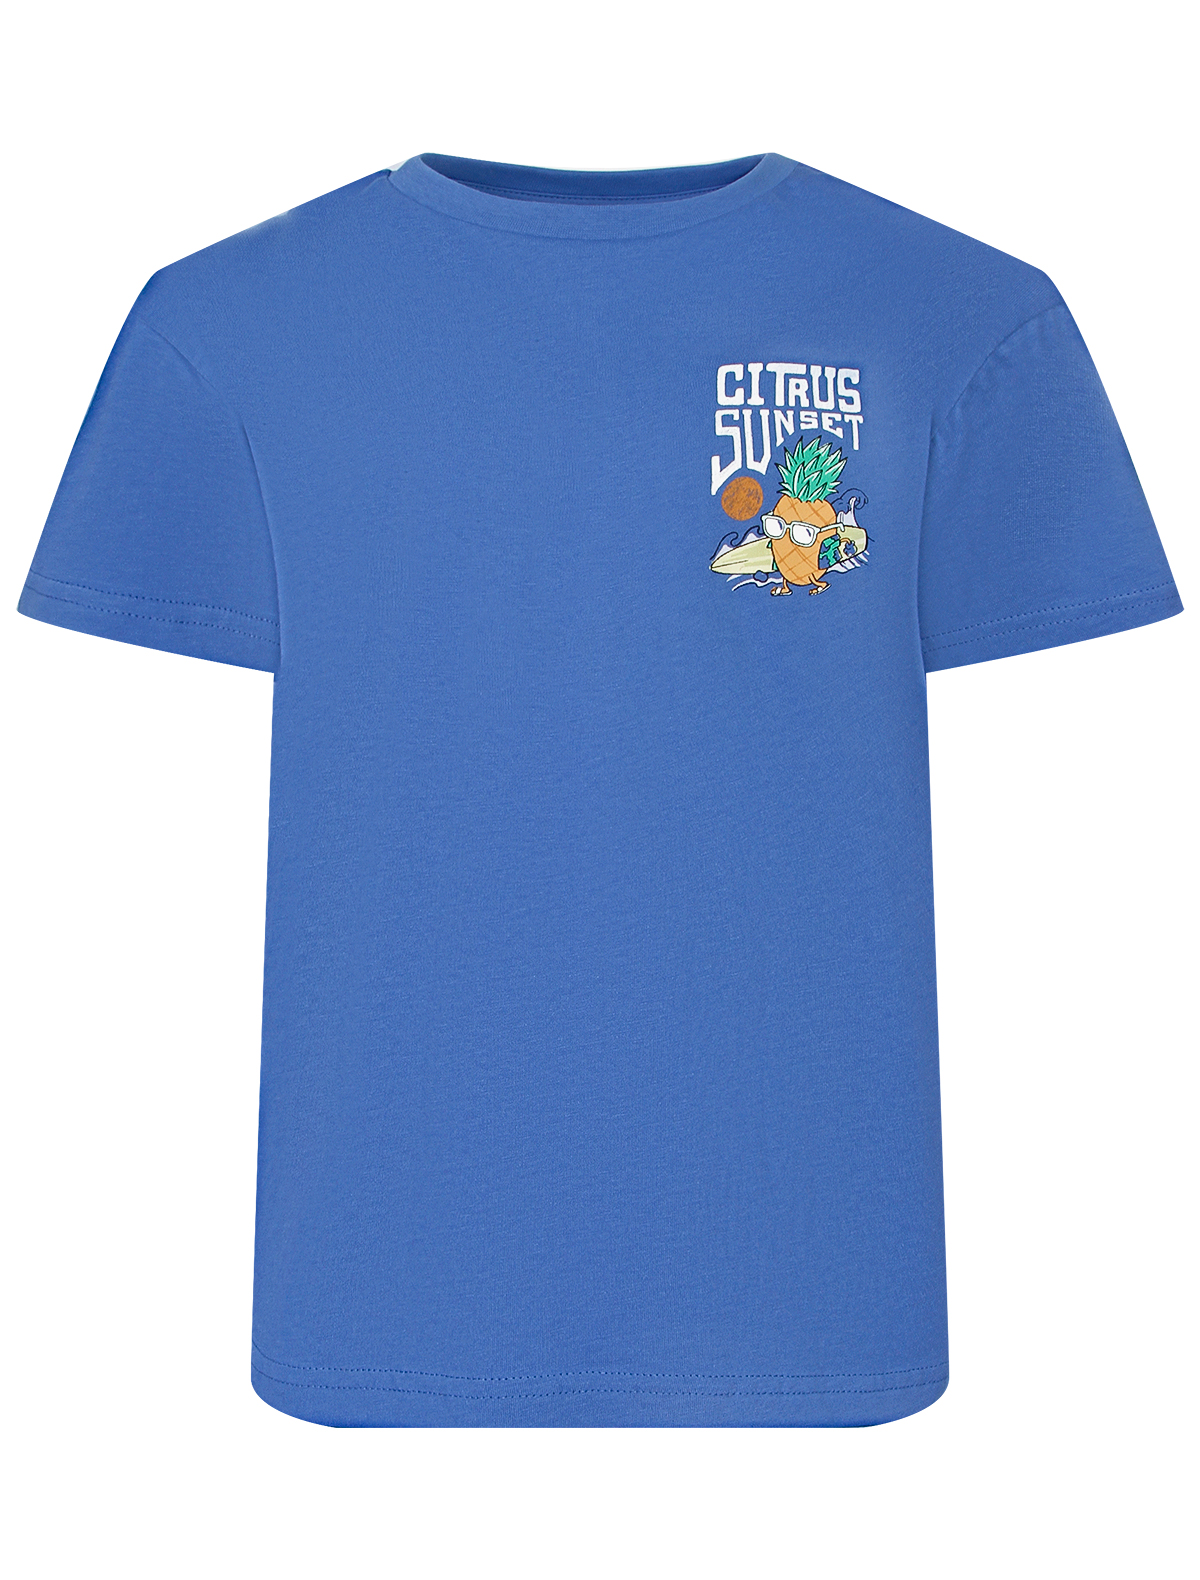 футболка mayoral для мальчика, голубая